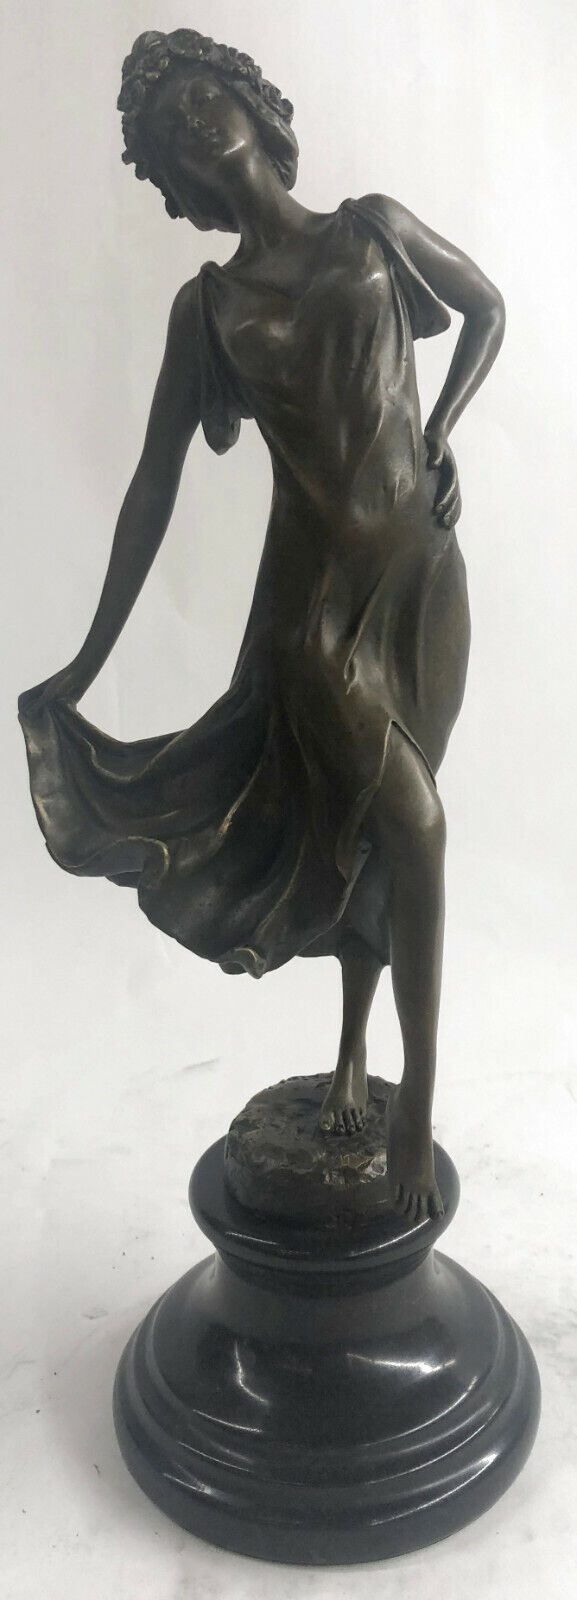 Handcrafted Detailed Ballerina Dancer Dance Trophy Bronze Sculpture Figurine Art